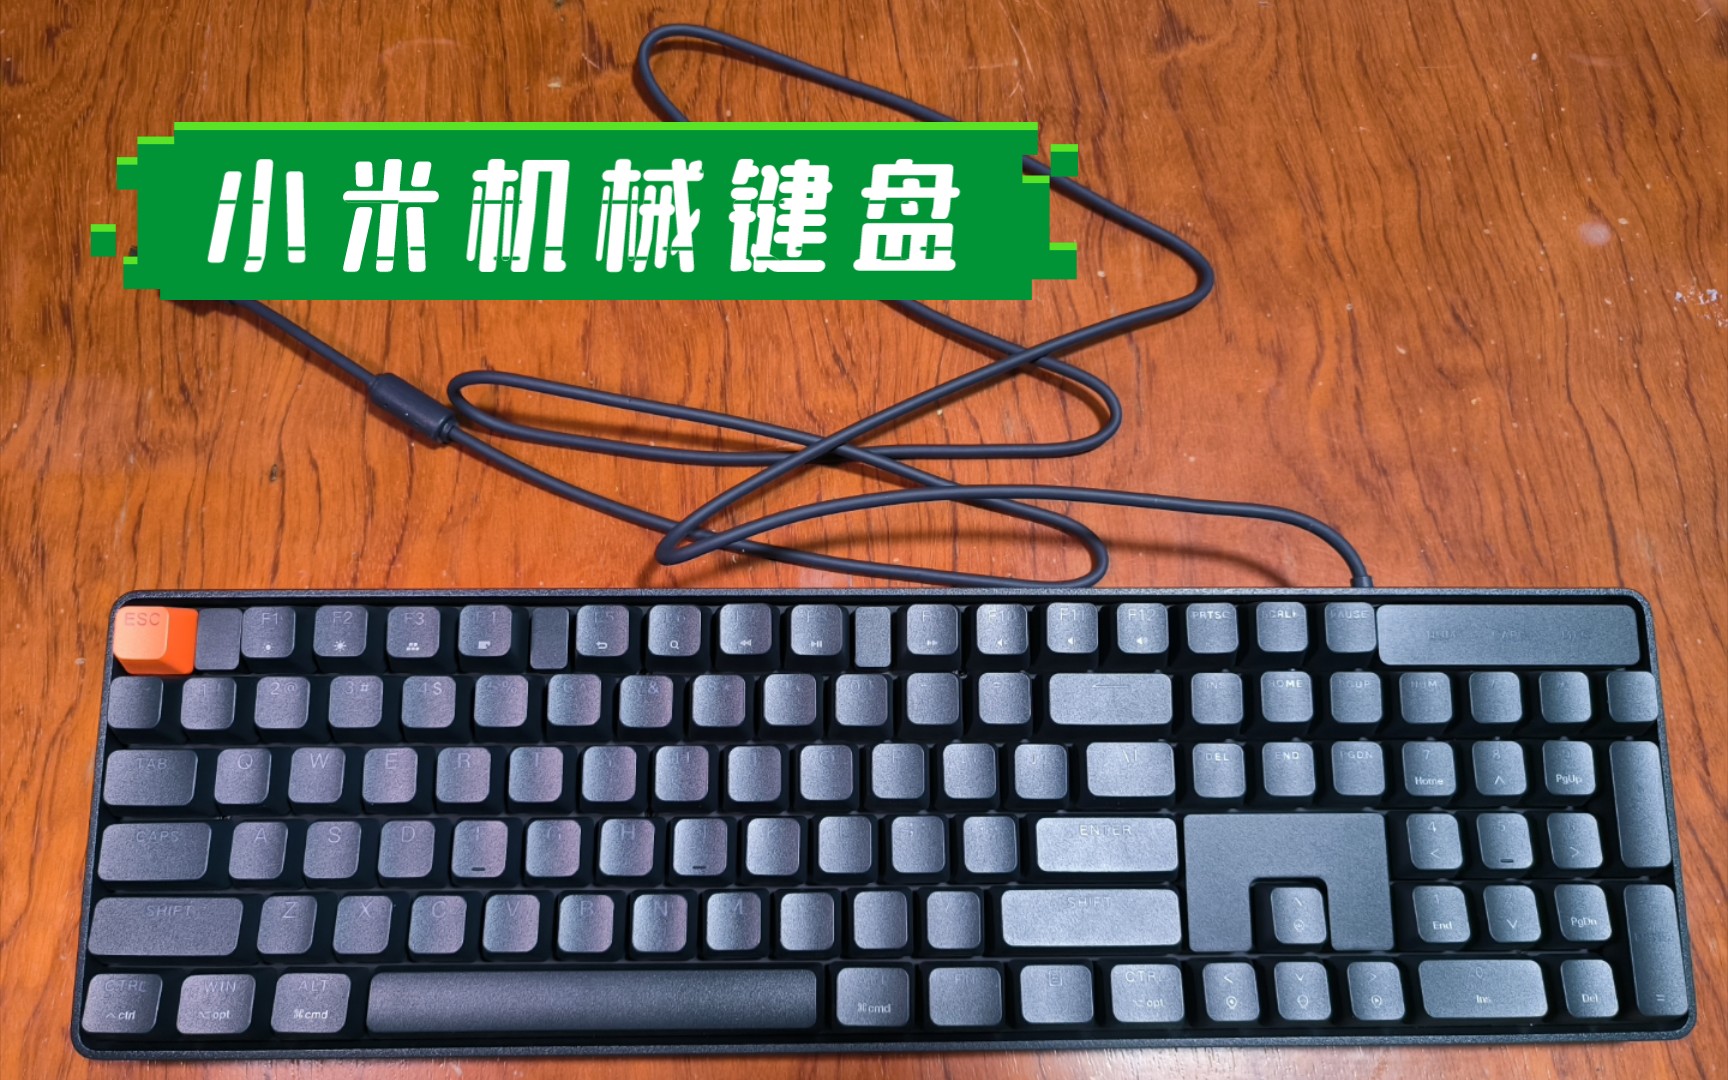 【myjd】小米有线机械键盘(青轴版)开箱 no041